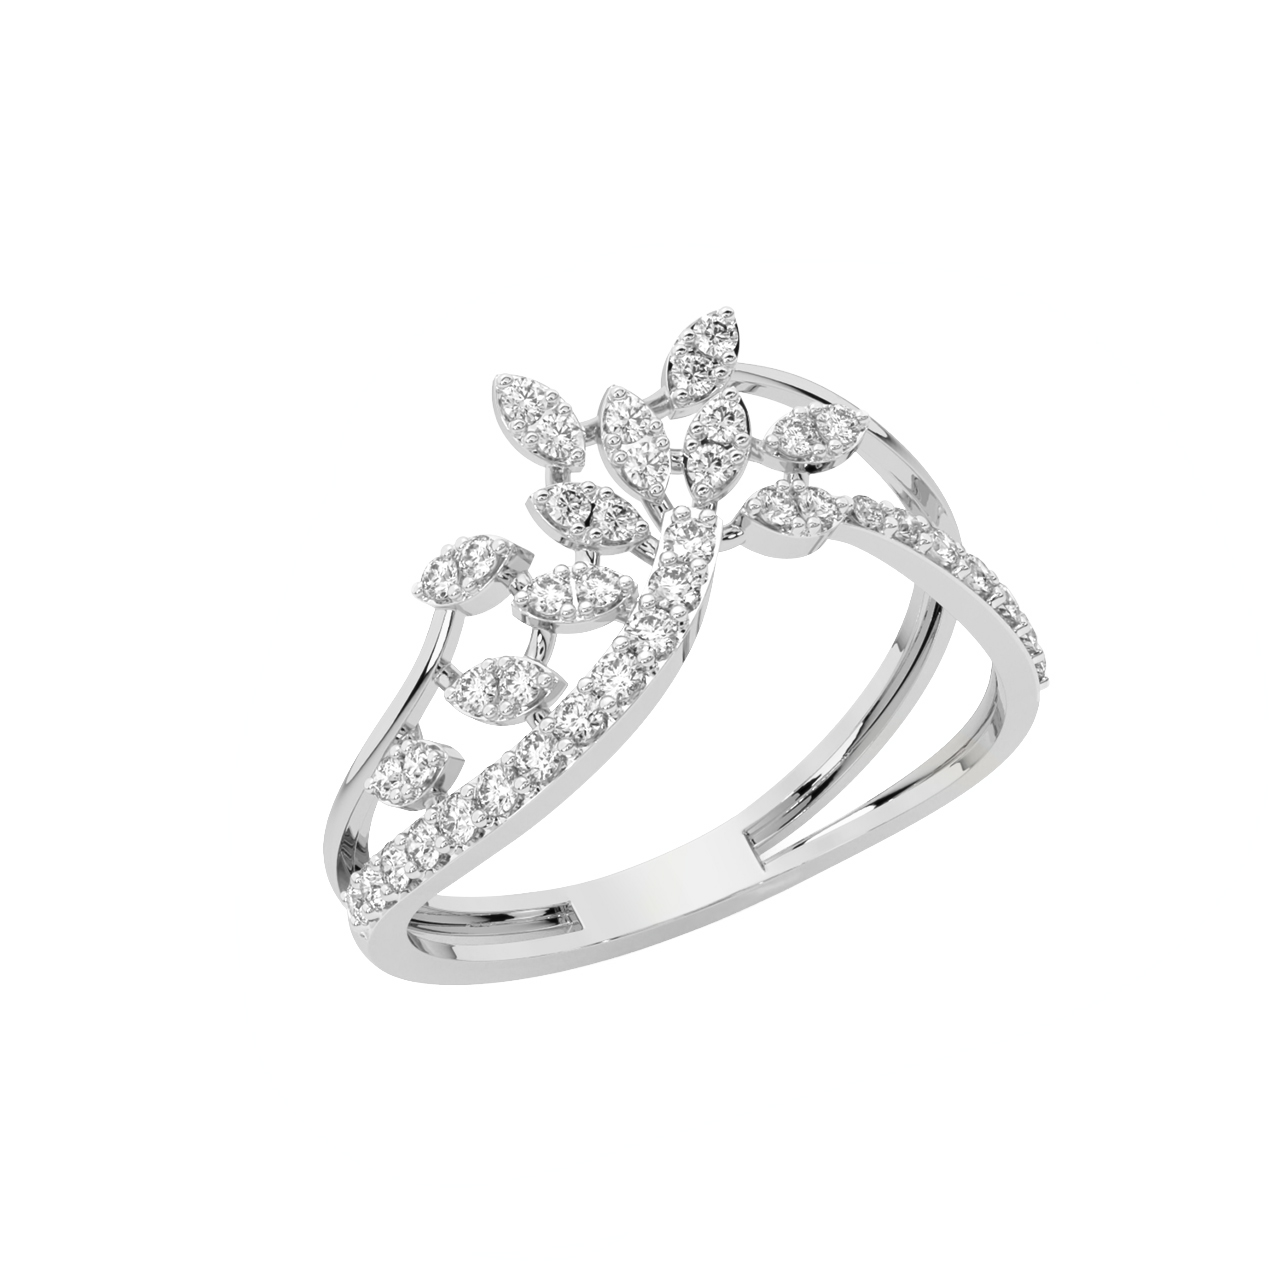 Buy Maple Leaves Diamond Engagement Ring Online